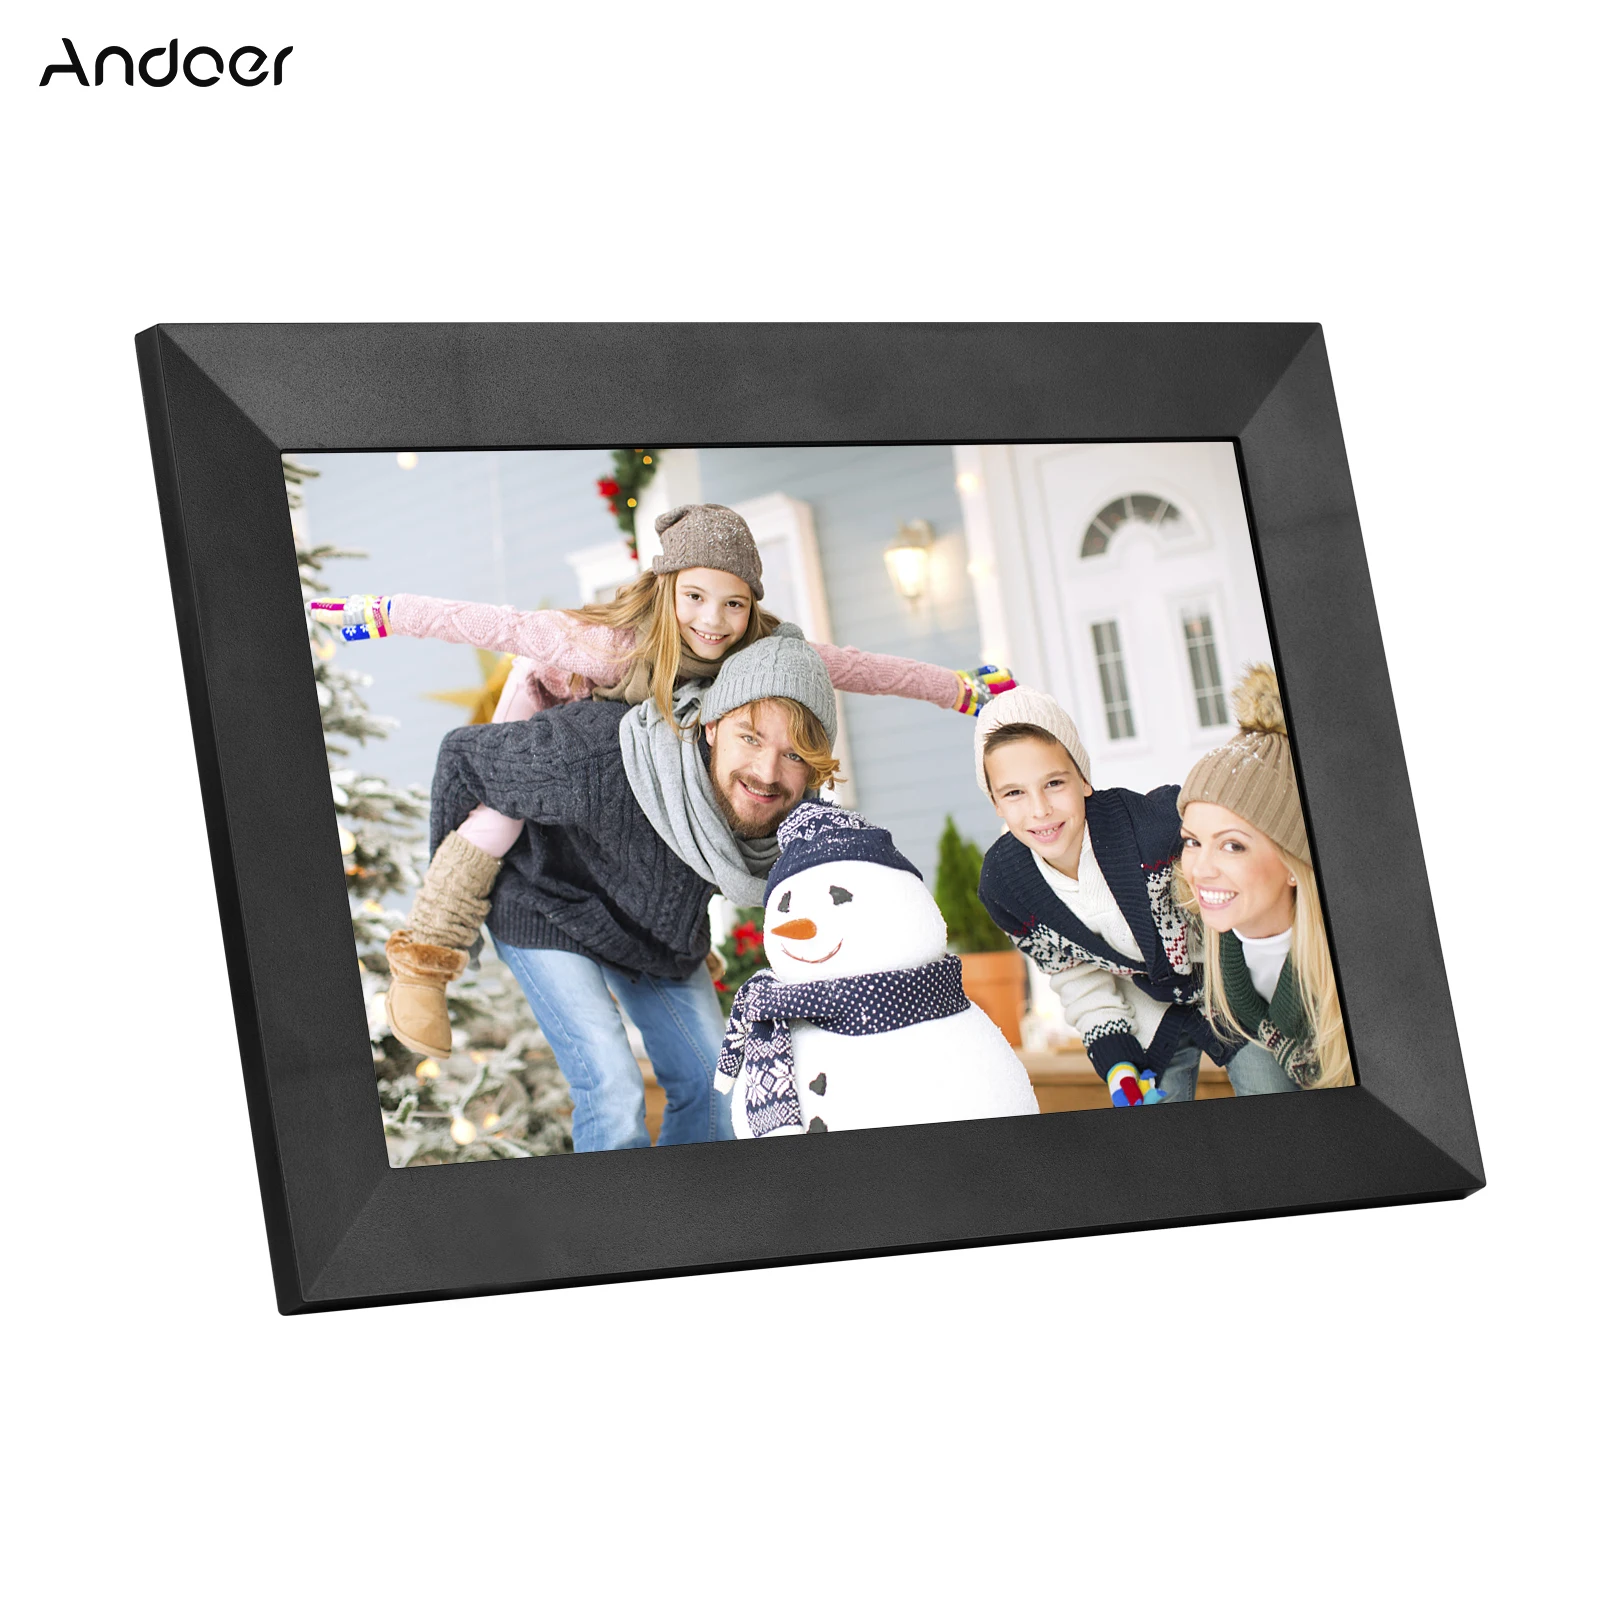 

Цифровая фоторамка Andoer, 8-дюймовая умная фоторамка с Wi-Fi, IPS сенсорный экран, 1280*800, фото, видео 1080P, память 16 ГБ, APP Share